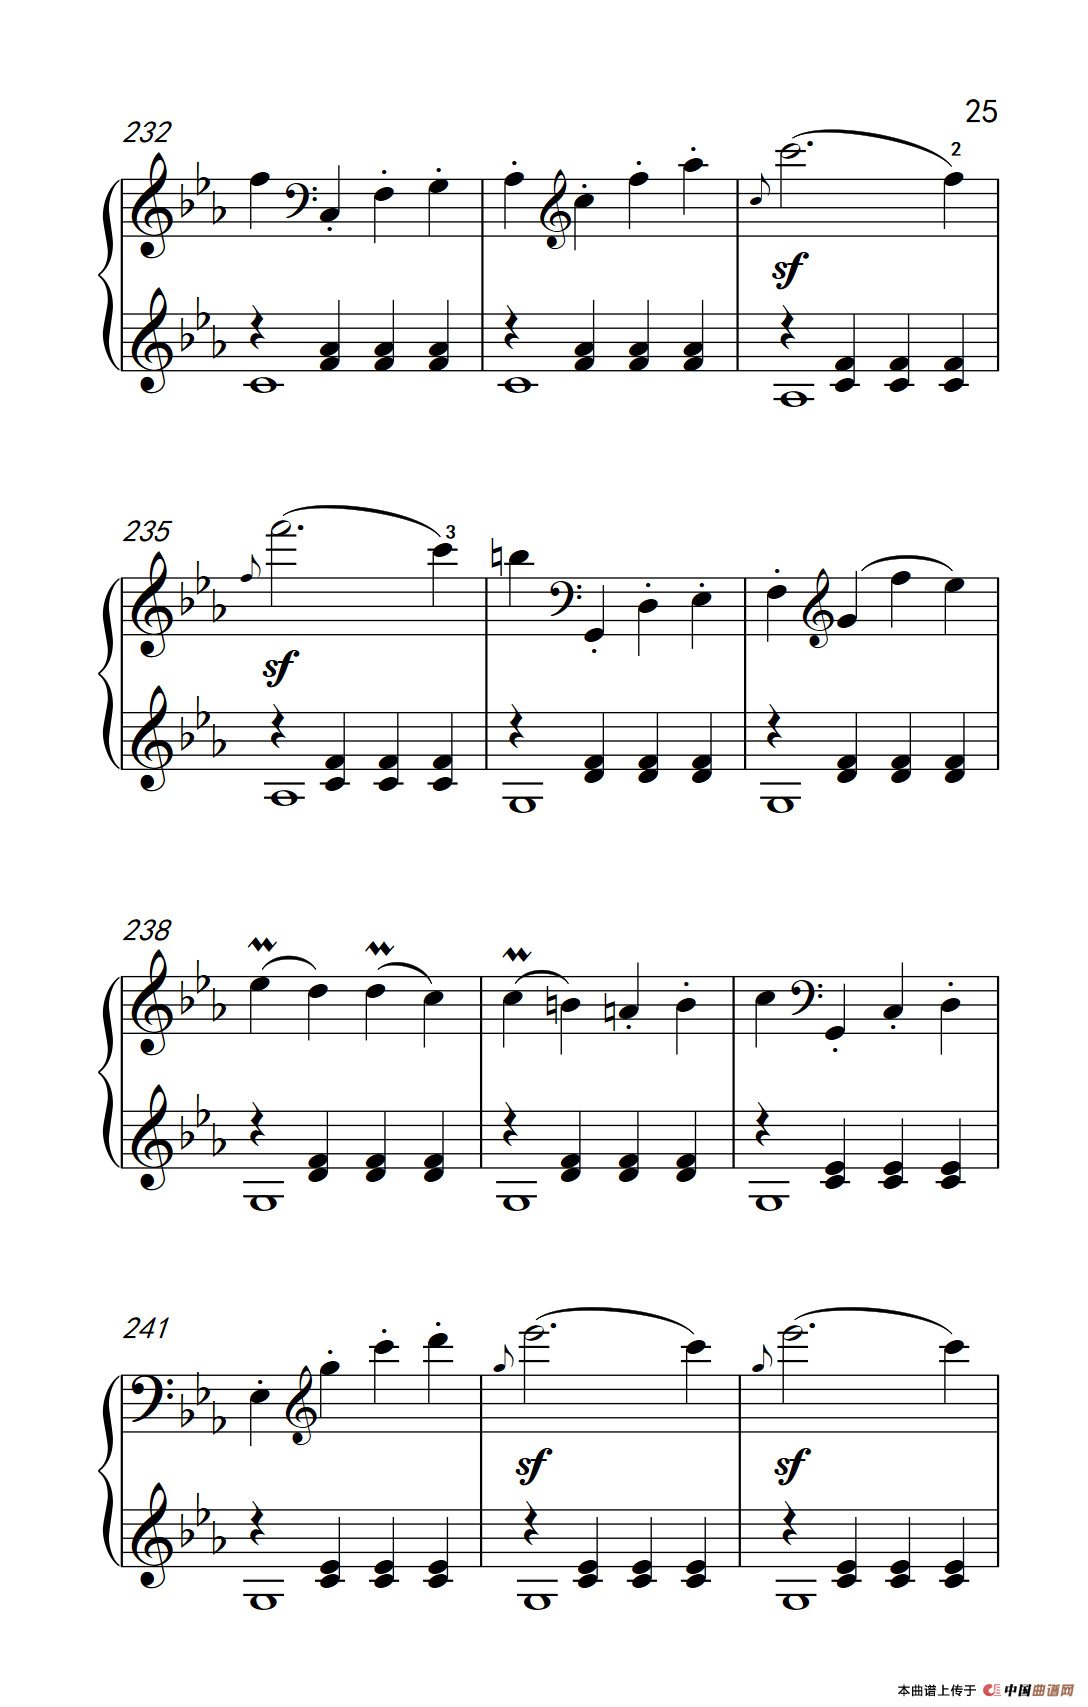 《第八钢琴奏鸣曲 极慢的慢板序奏转辉煌的快板》钢琴曲谱图分享